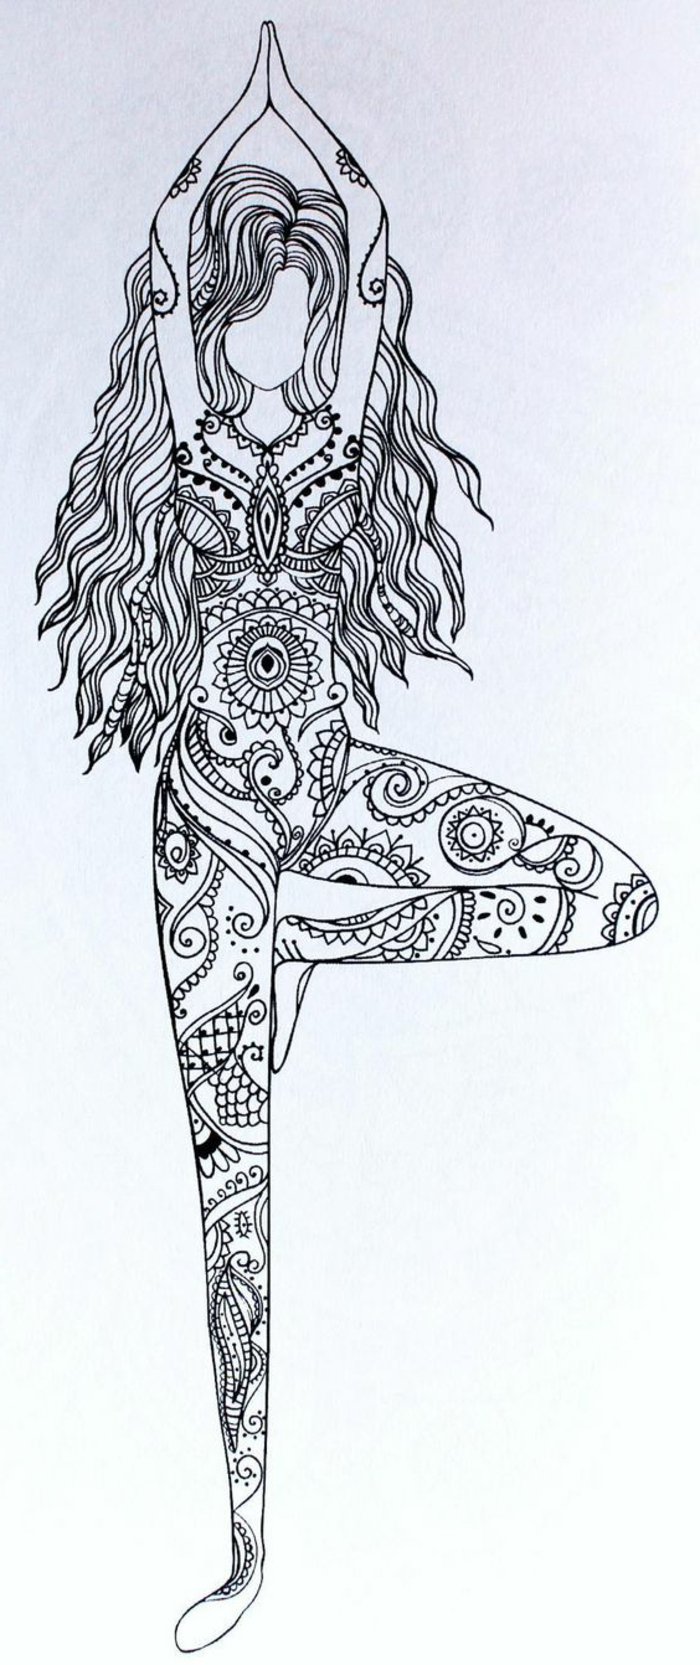 egy mandala rajz egy lányt, aki jóga, hosszú hullámos hajú lány, mini mandala